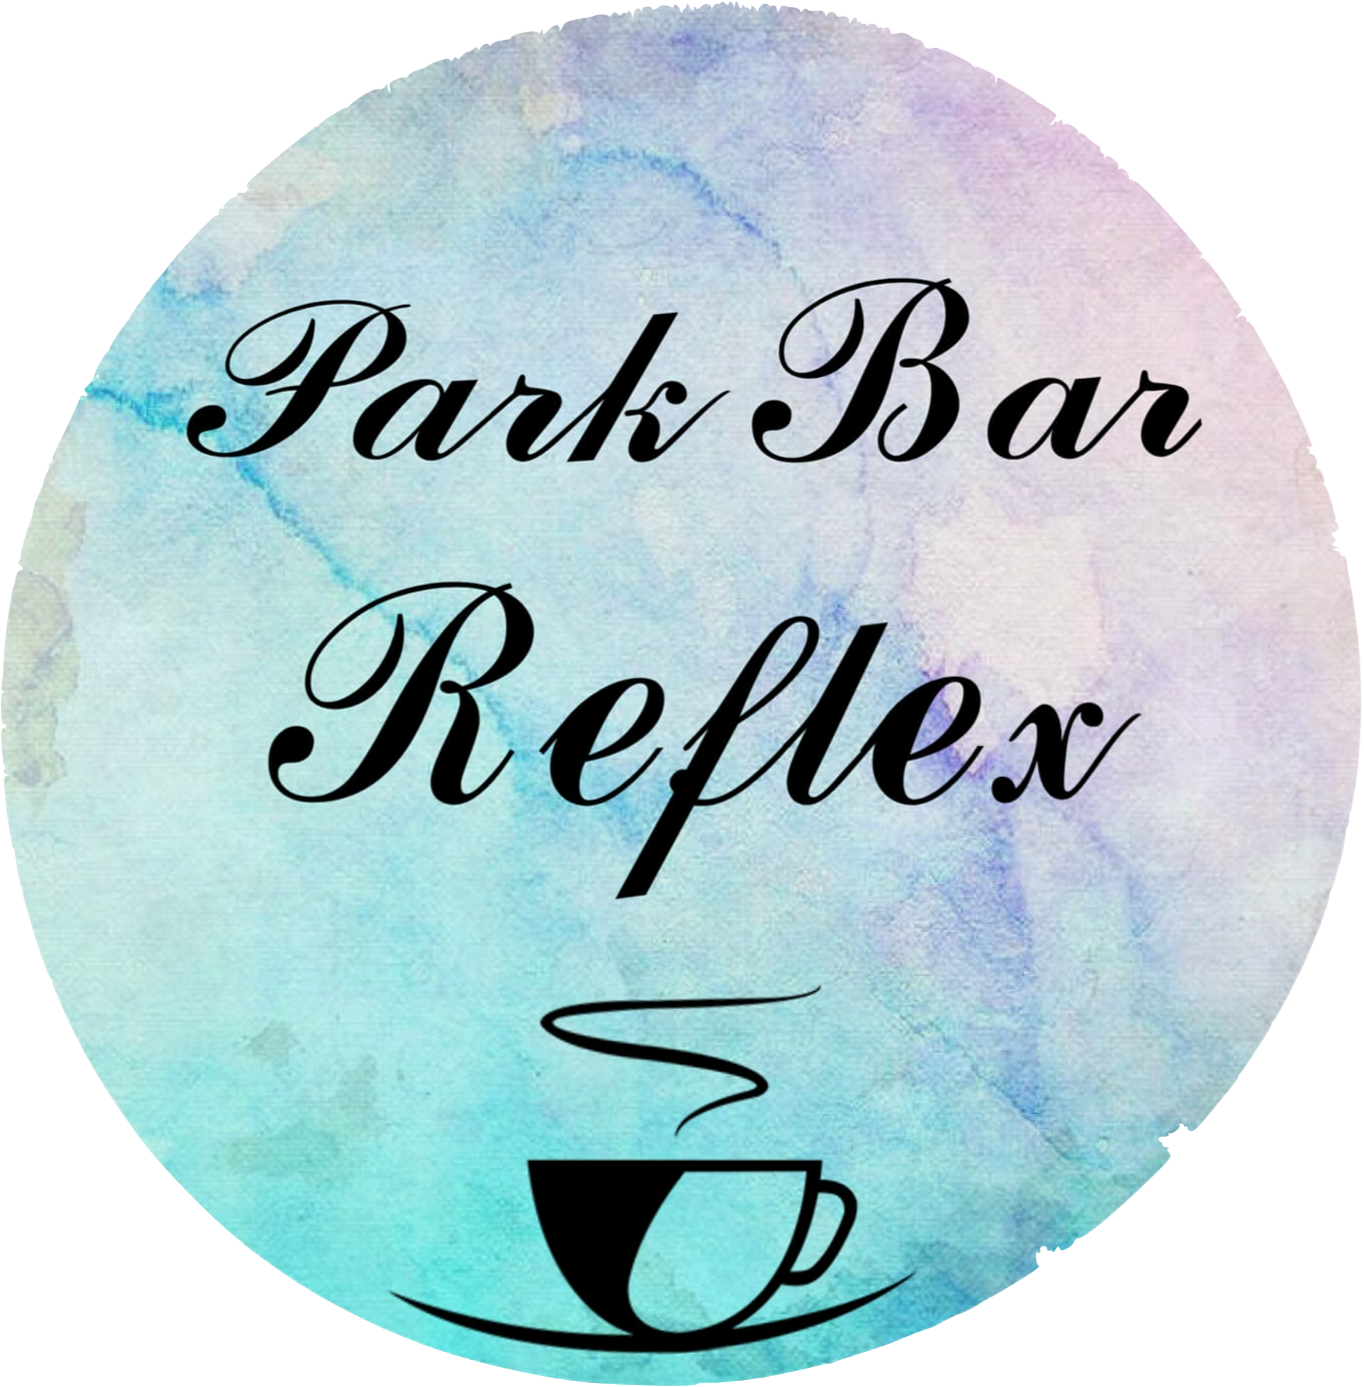 Park Bar Reflex